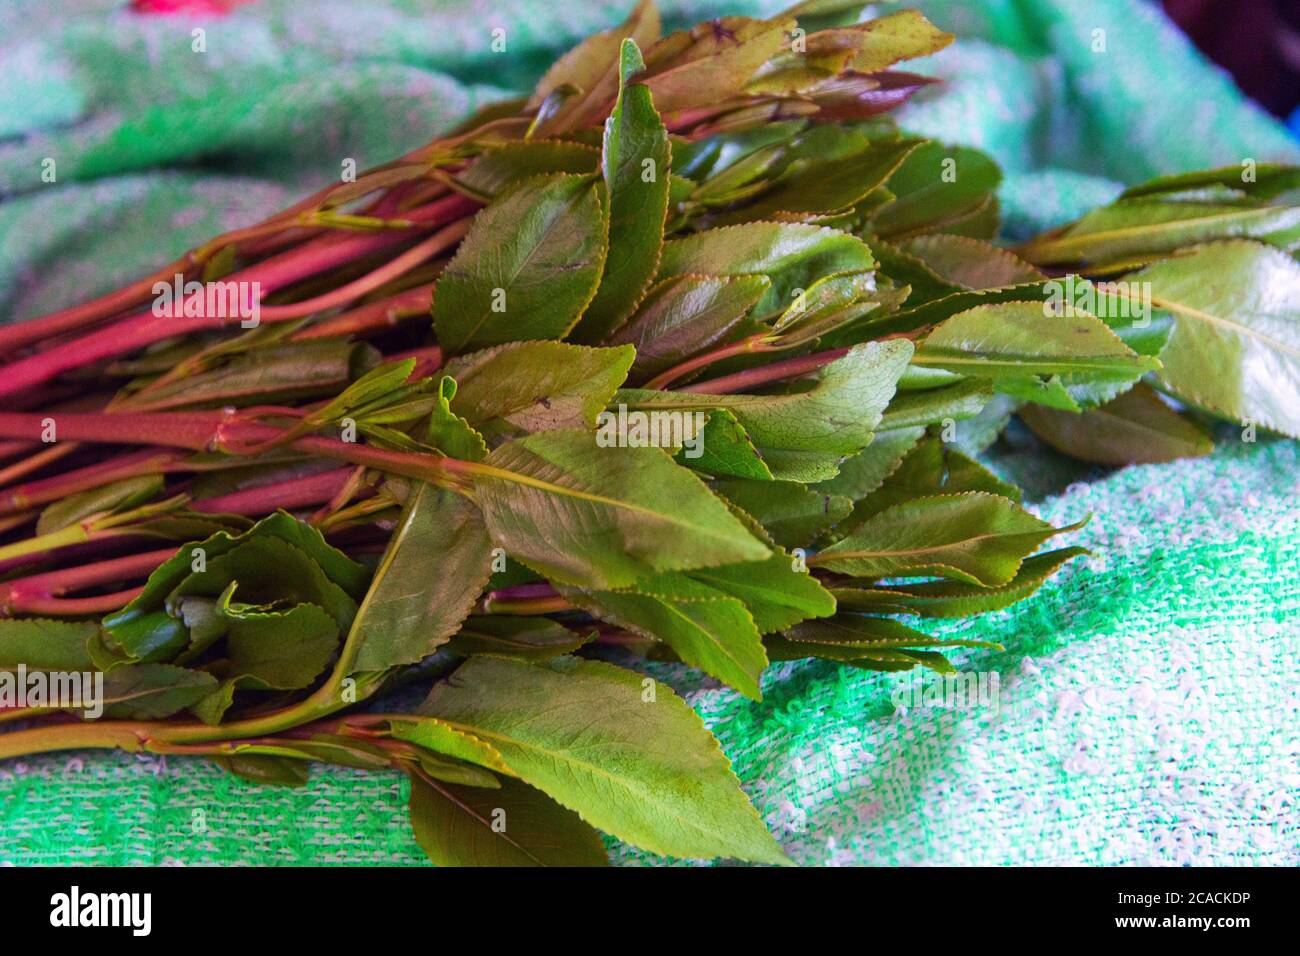 Khat plante, connue pour la cathinone, un stimulant, qui est dit pour causer l'excitation, la perte d'appétit, et l'euphorie Banque D'Images